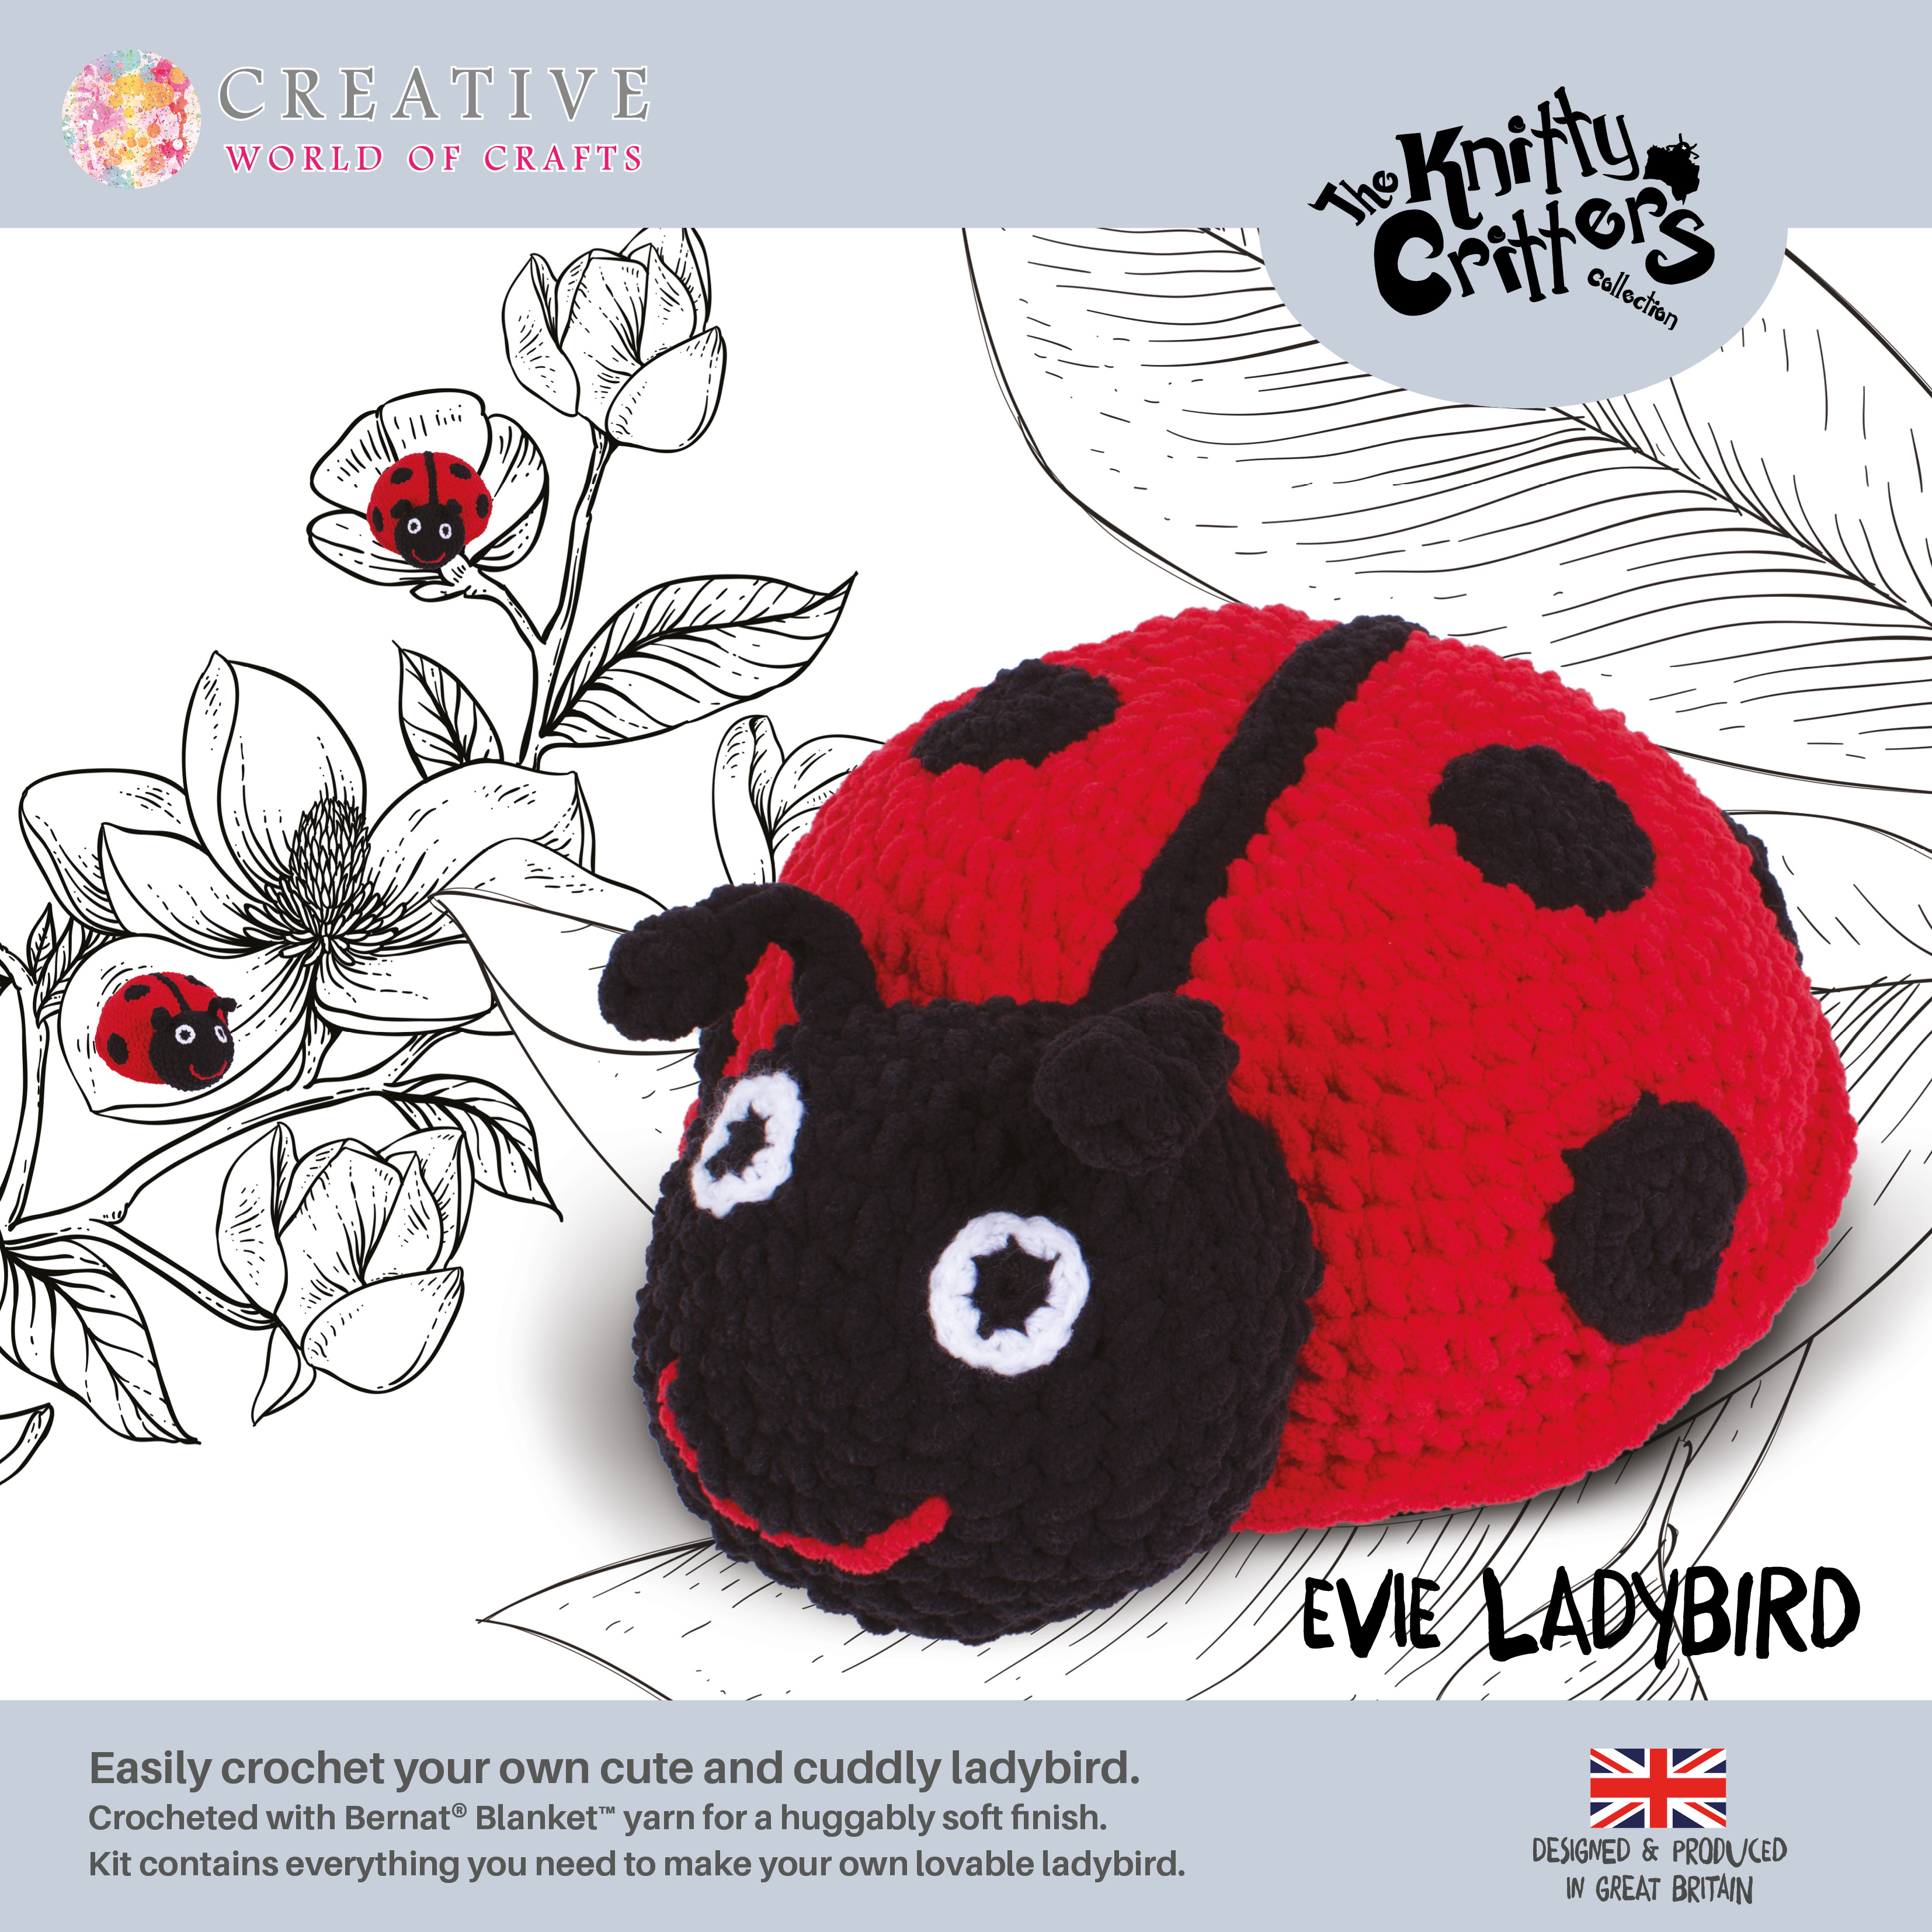 Knitty Critters - Ladybird - Evie